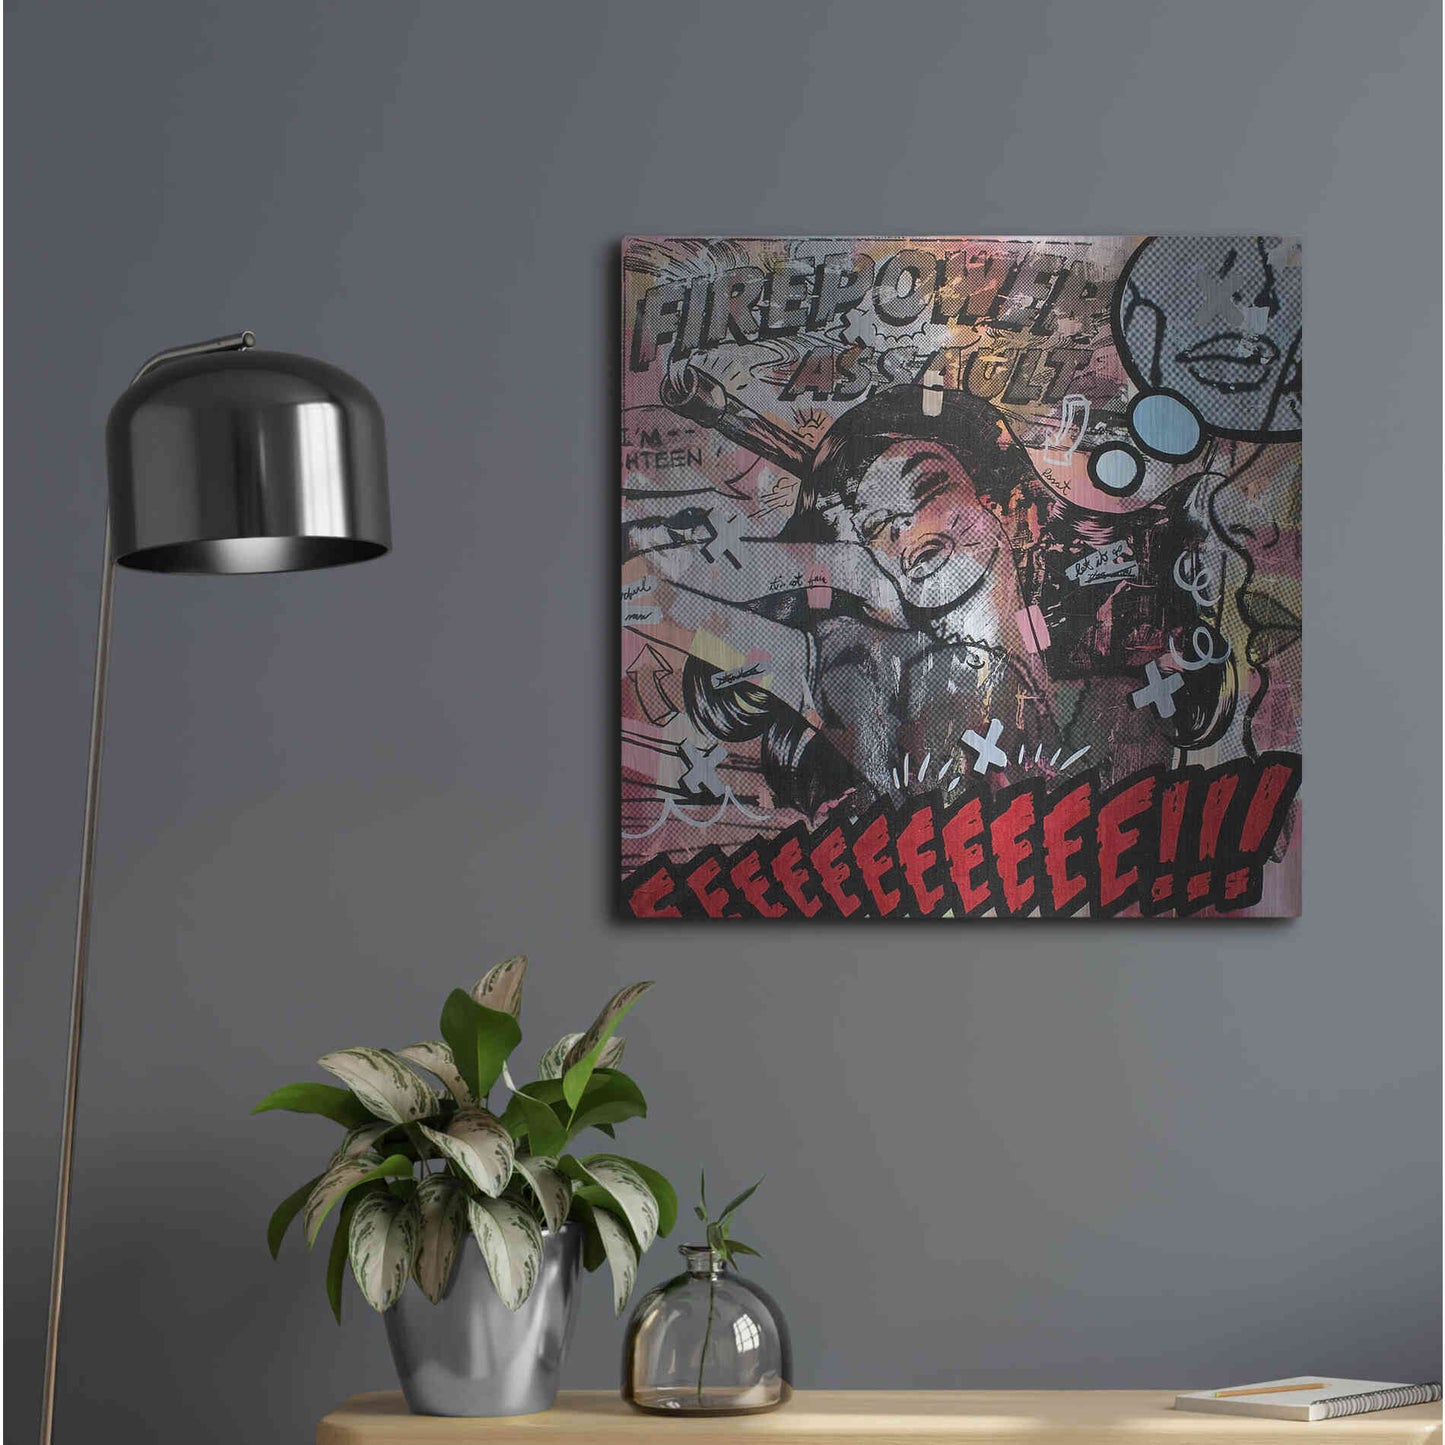 Luxe Metal Art 'Firepower Assault' by Dan Monteavaro, Metal Wall Art,24x24